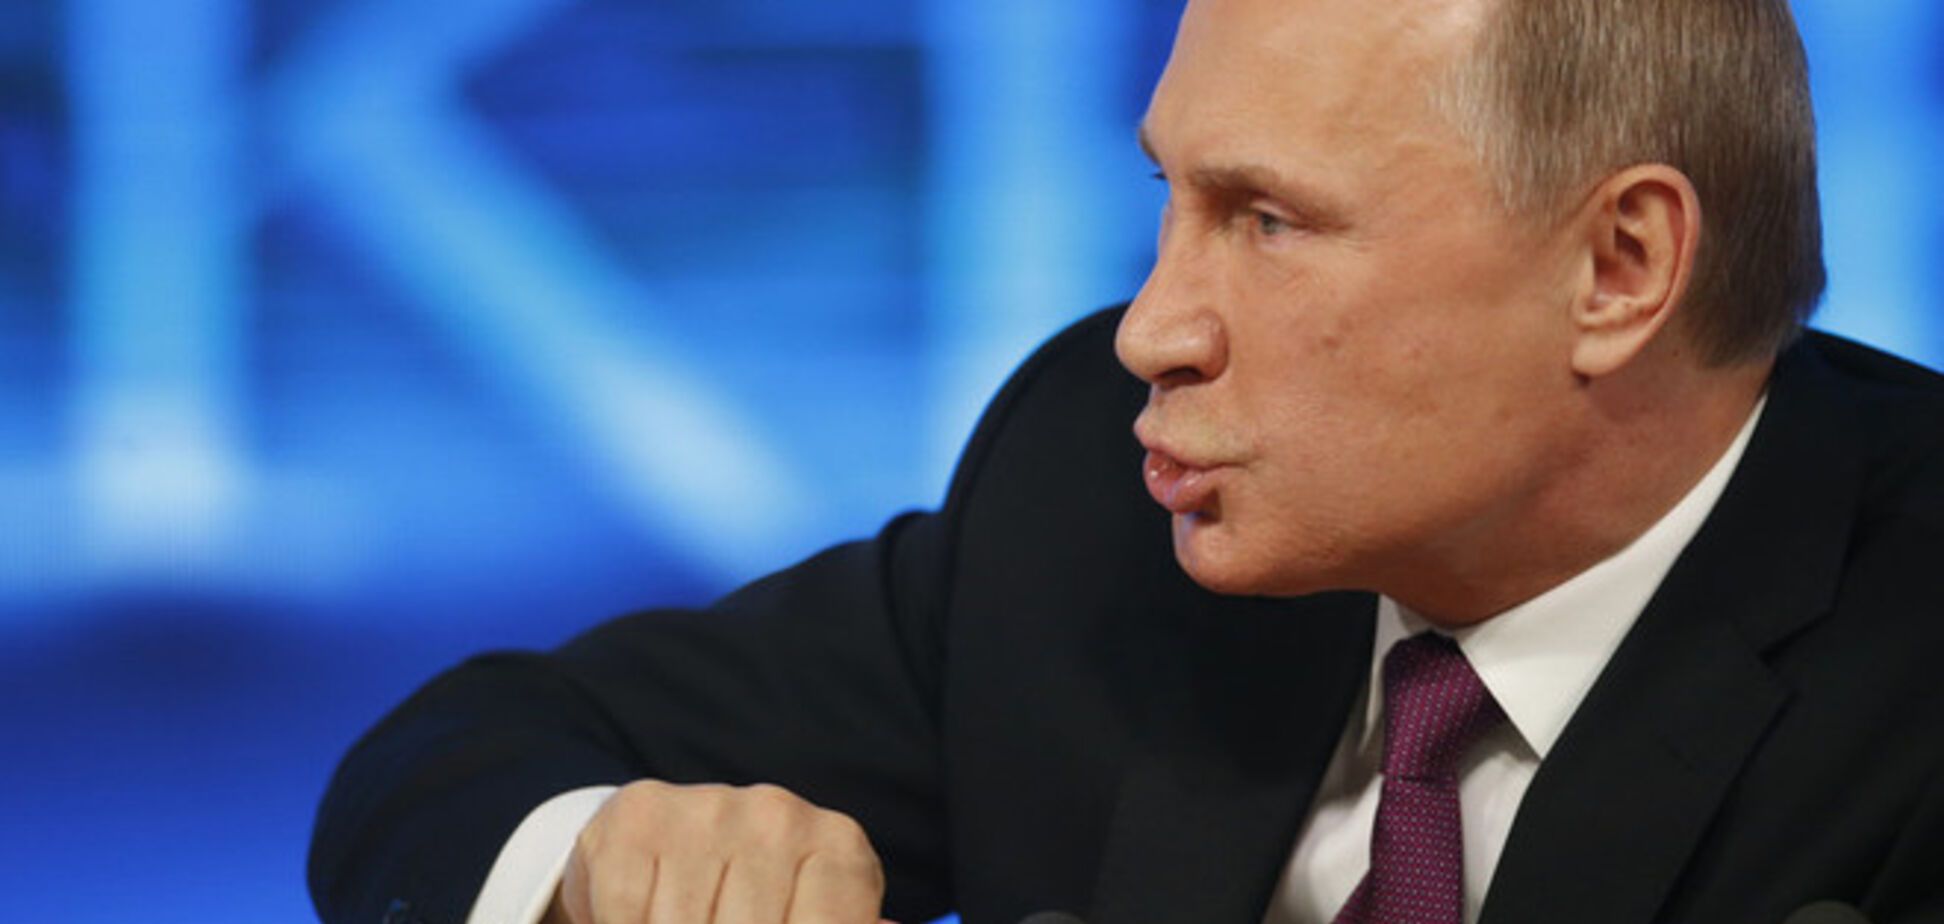 Путин: Россия не будет участвовать в дорогостоящей гонке вооружений, и все споры в дальнейшем будет решать мирно